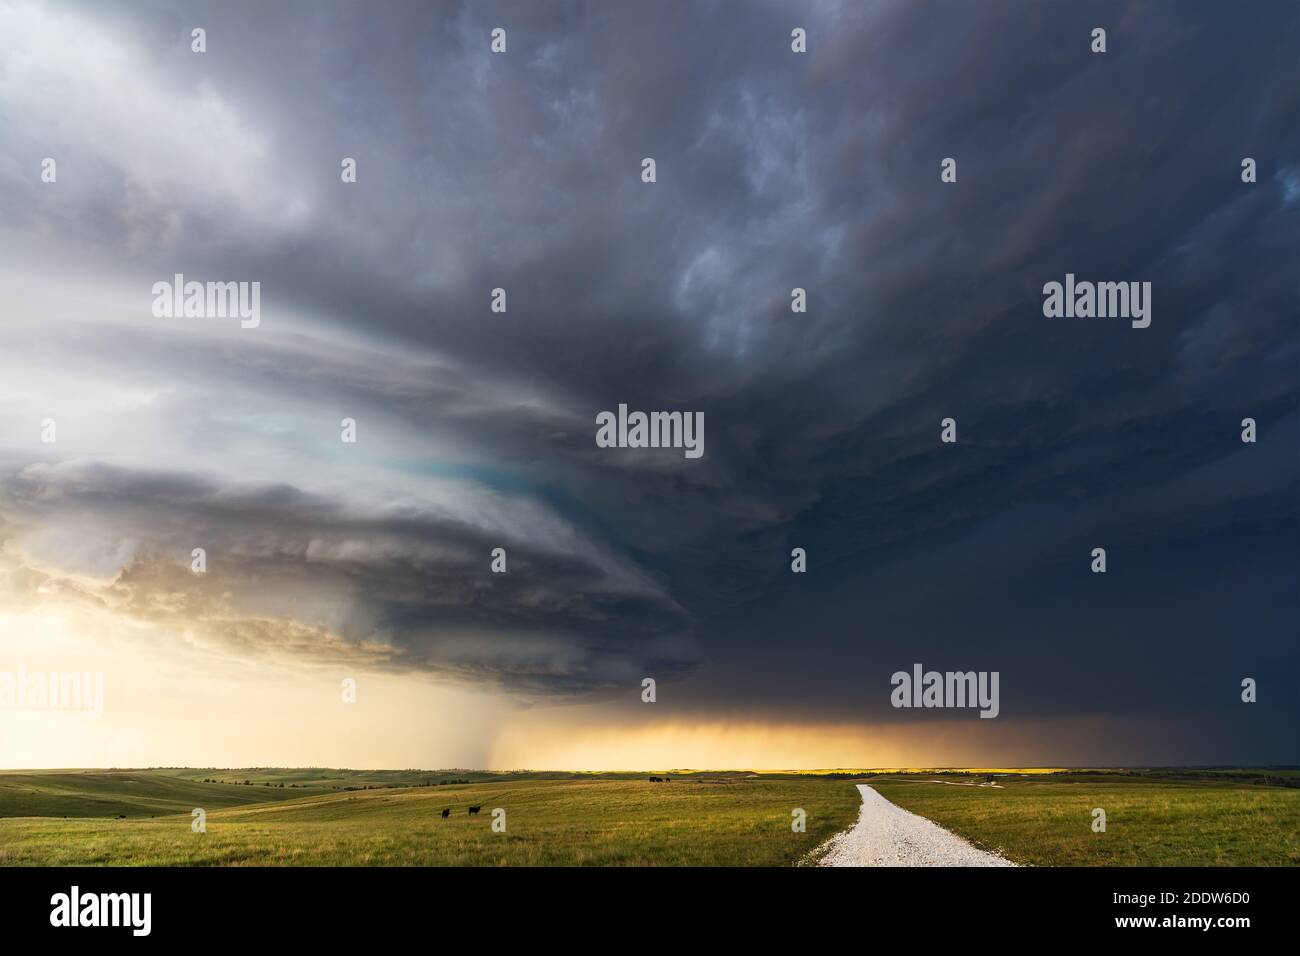 Nuages de tempête sombres d'un orage supercellulaire au-dessus d'un paysage pittoresque dans le Nebraska. Banque D'Images